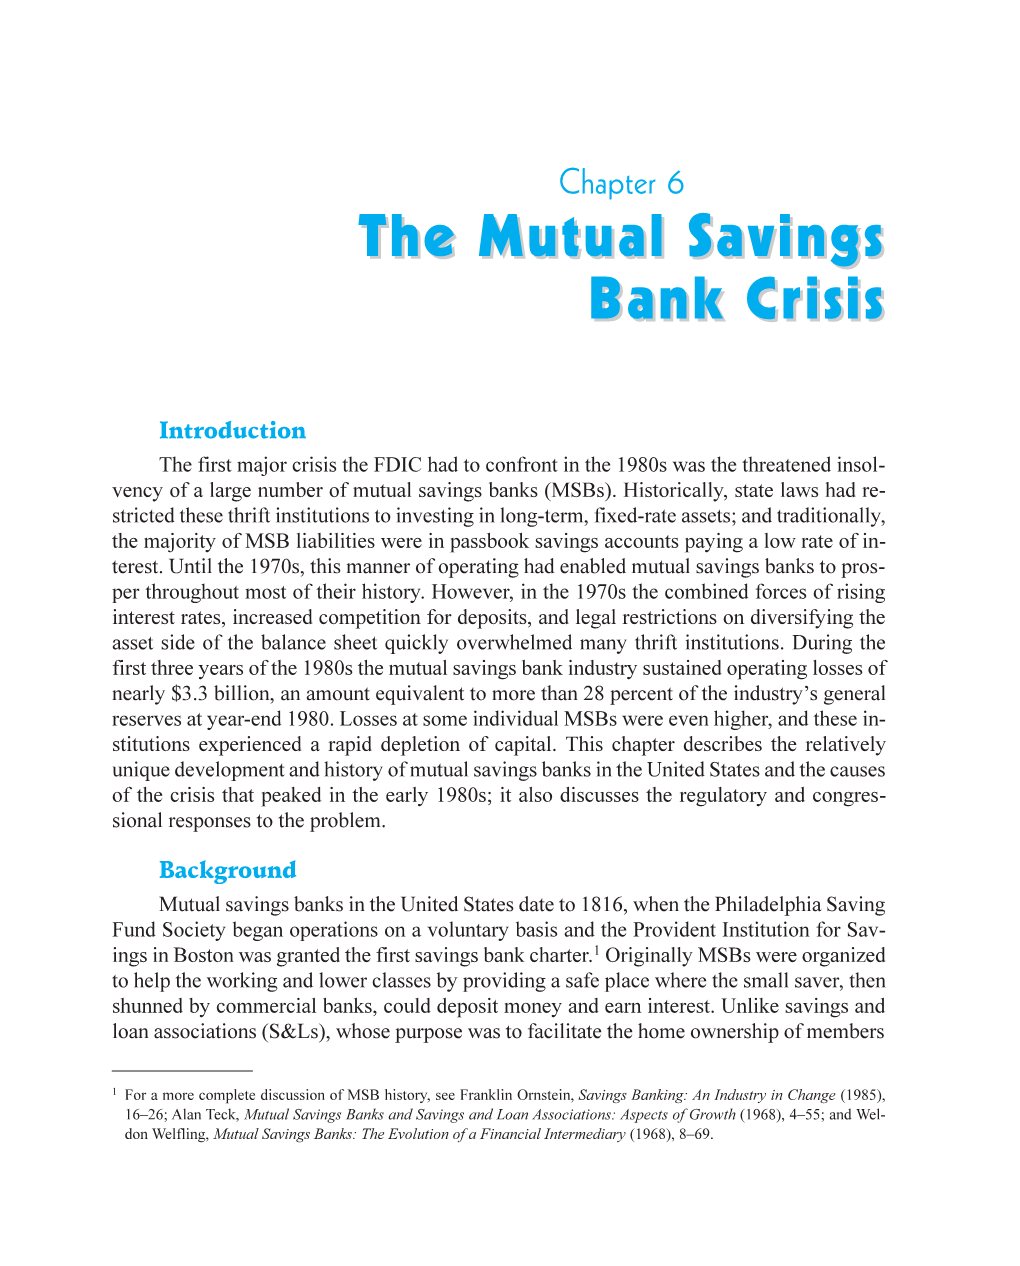 The Mutual Savings Bank Crisis